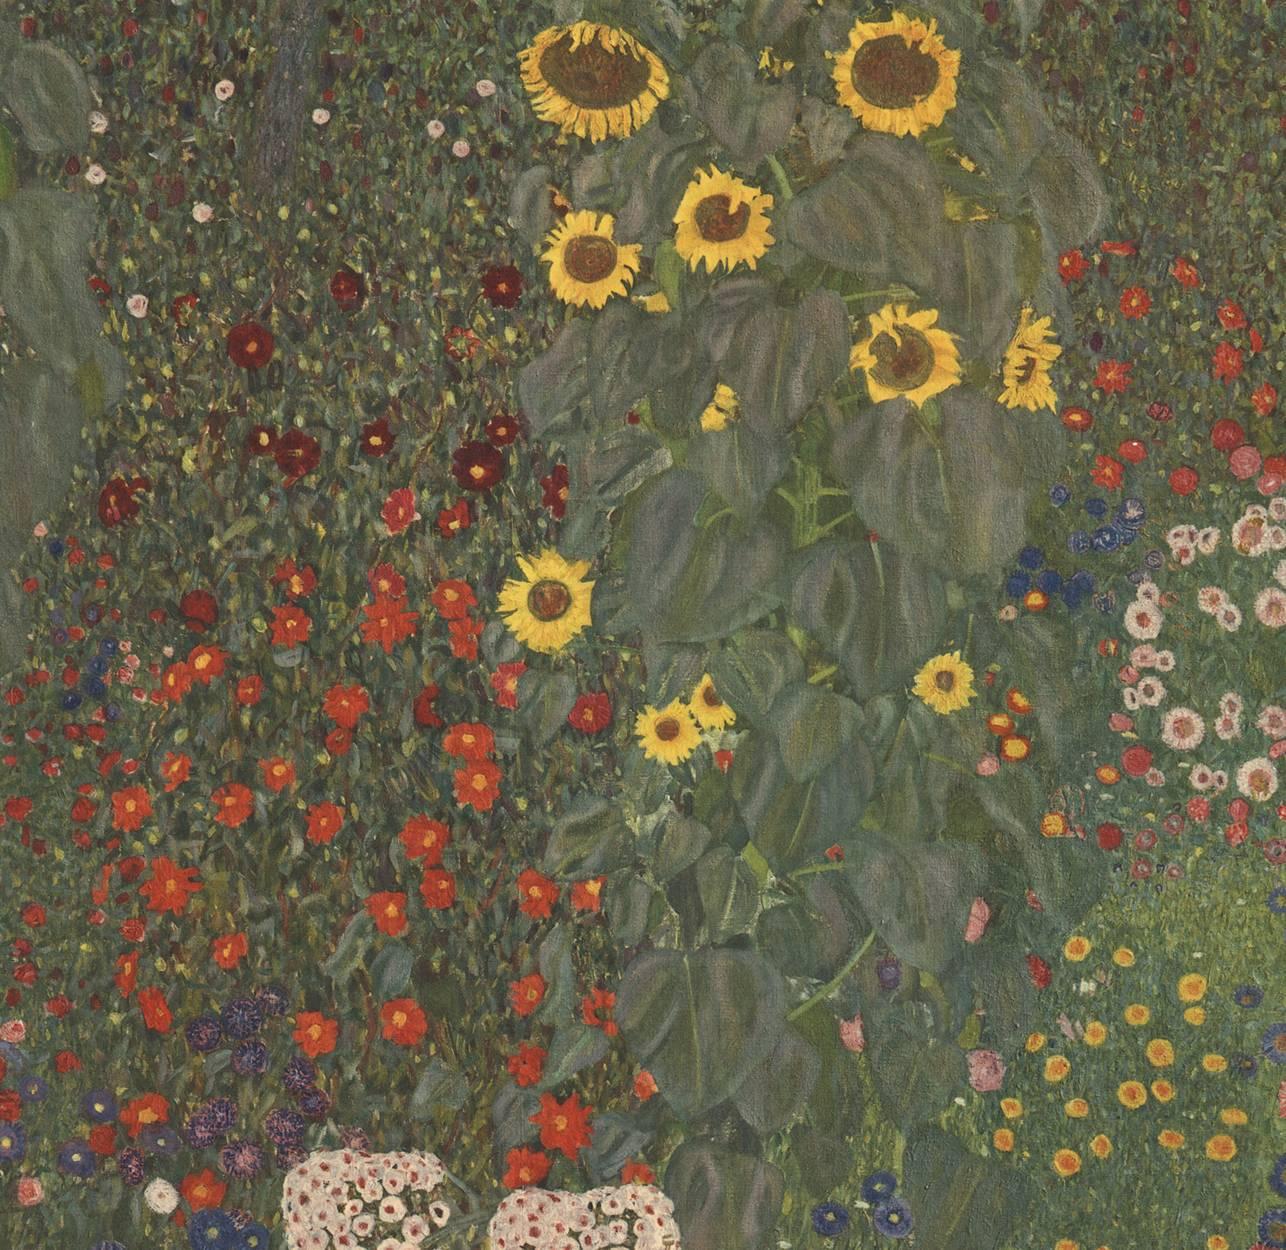 Max Eisler Eine Nachlese folio “Sunflowers” collotype print - Print by (after) Gustav Klimt